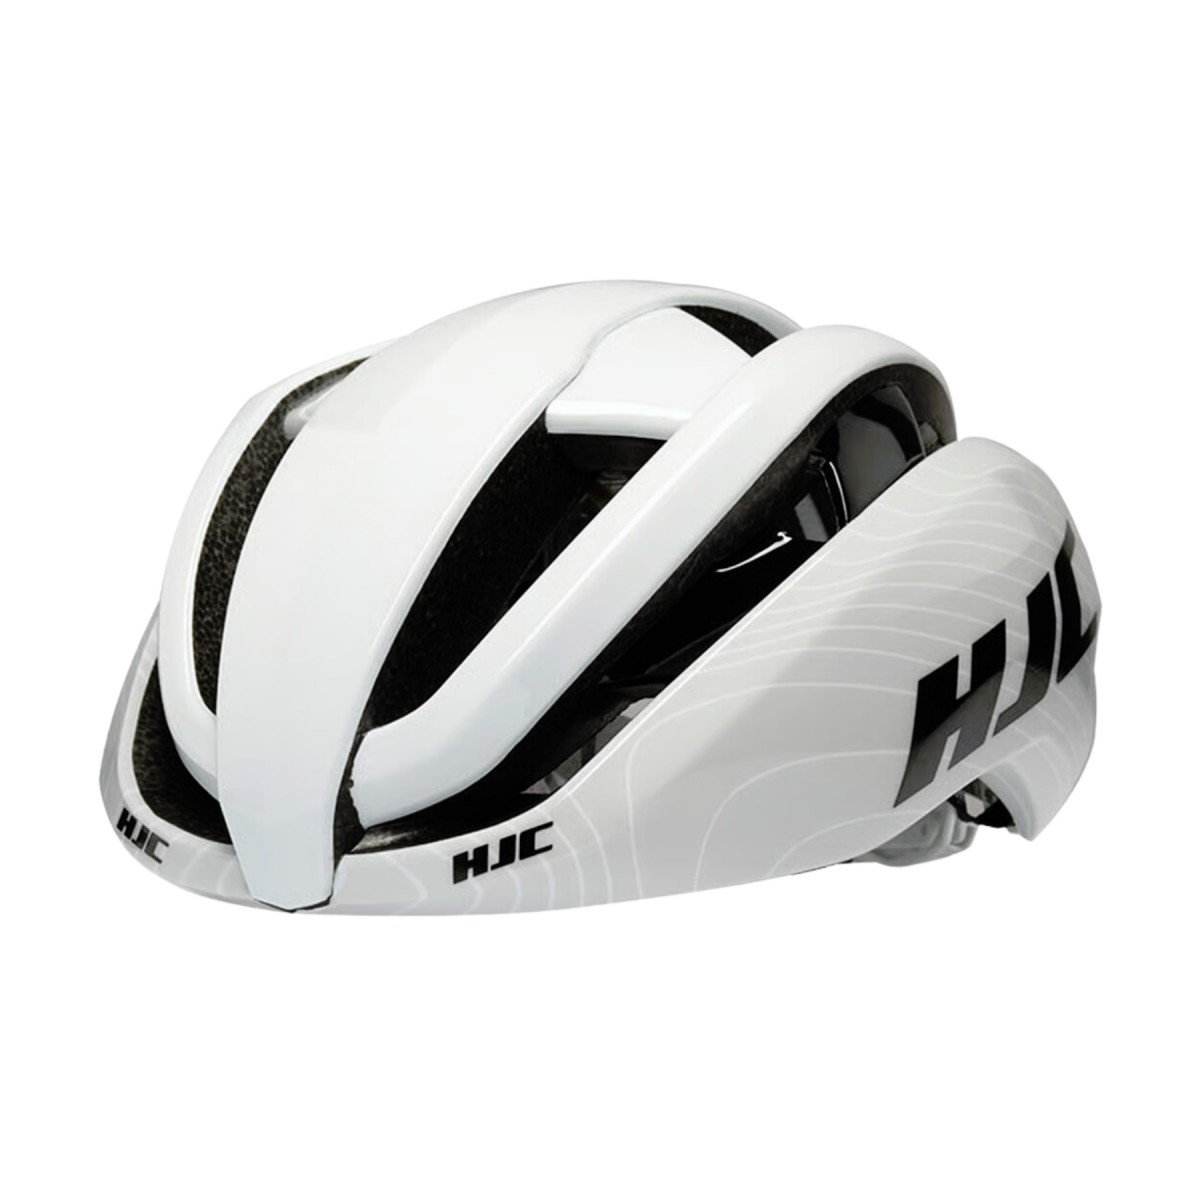 FT 6 günstig Kaufen-HJC Ibex 2.0 Helm Weiß Grau, Größe L. HJC Ibex 2.0 Helm Weiß Grau, Größe L <![CDATA[HJC Ibex 2.0 Helm Weiß Grau
 Der HJC Ibex 2.0 Helm ist ein ultraleichter und bequemer Helm, der für optimale Belüftung sorgt.